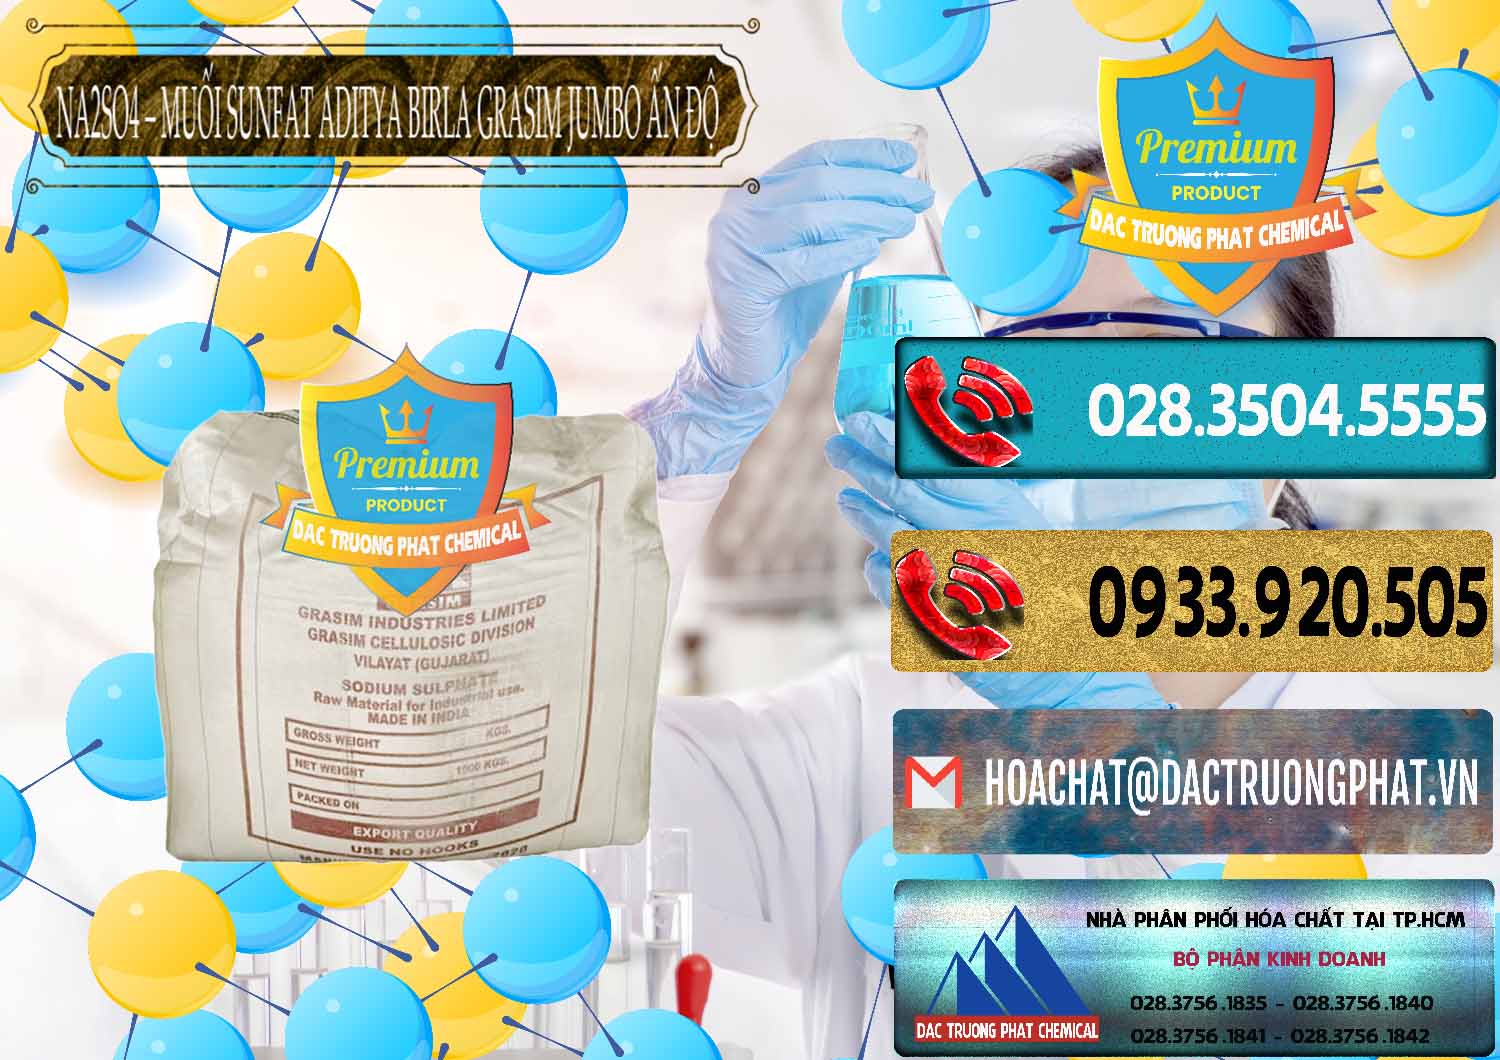 Nơi cung cấp & bán Sodium Sulphate - Muối Sunfat Na2SO4 Jumbo Bành Aditya Birla Grasim Ấn Độ India - 0357 - Nhà phân phối và bán hóa chất tại TP.HCM - hoachatdetnhuom.com